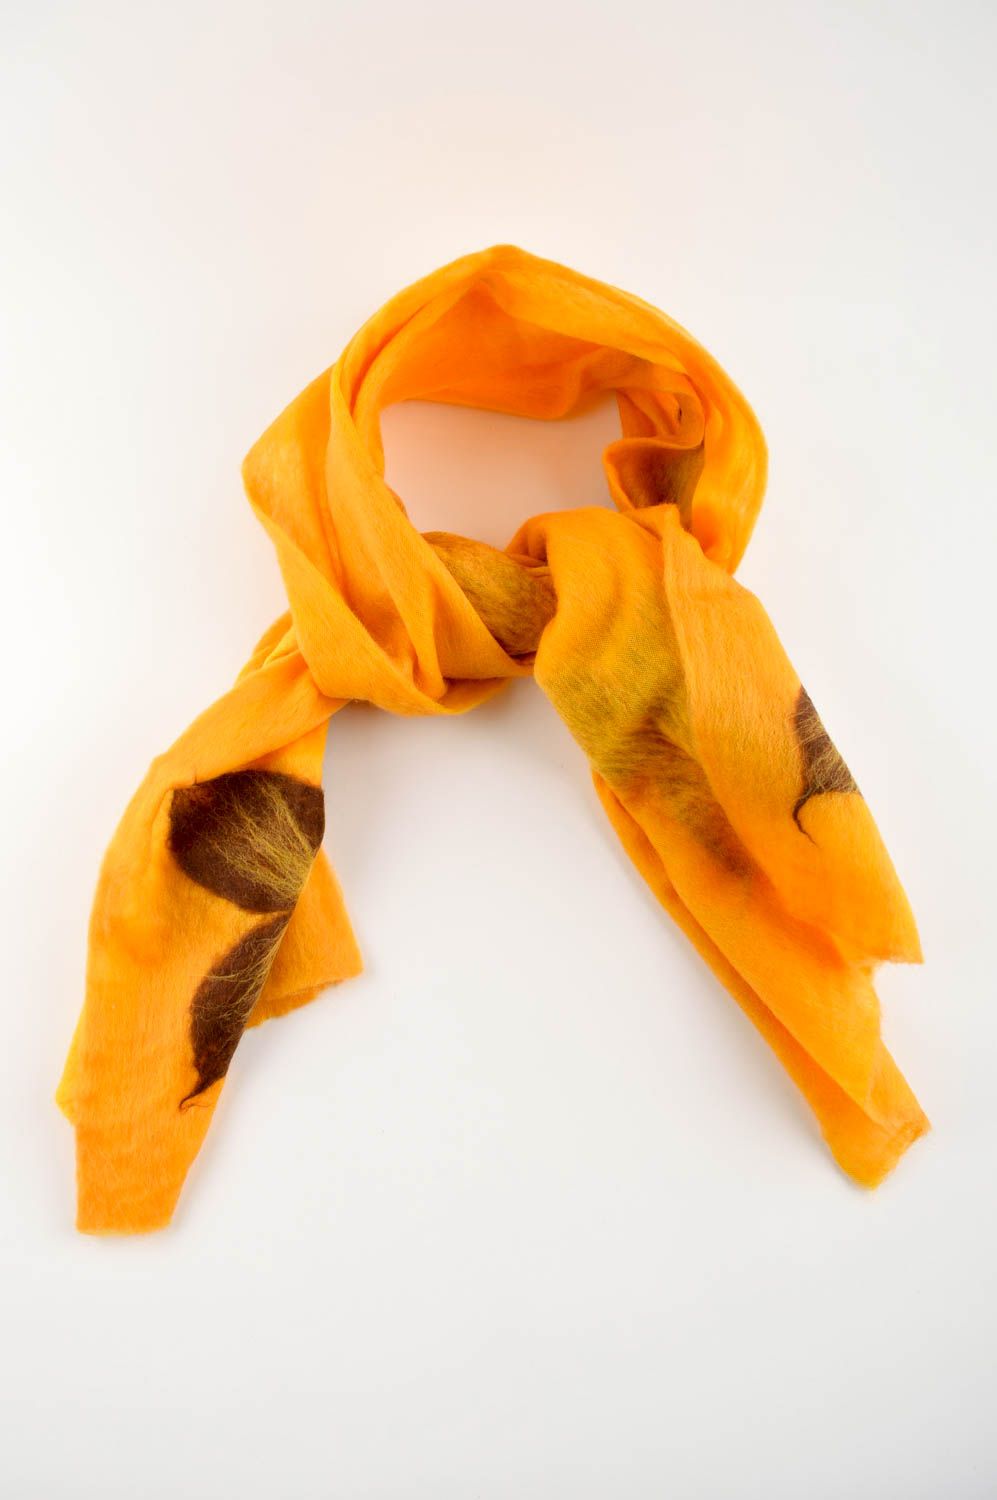 Handmade gefilzter Schal Frauen Accessoire schöner Schal aus Wolle gelb foto 2